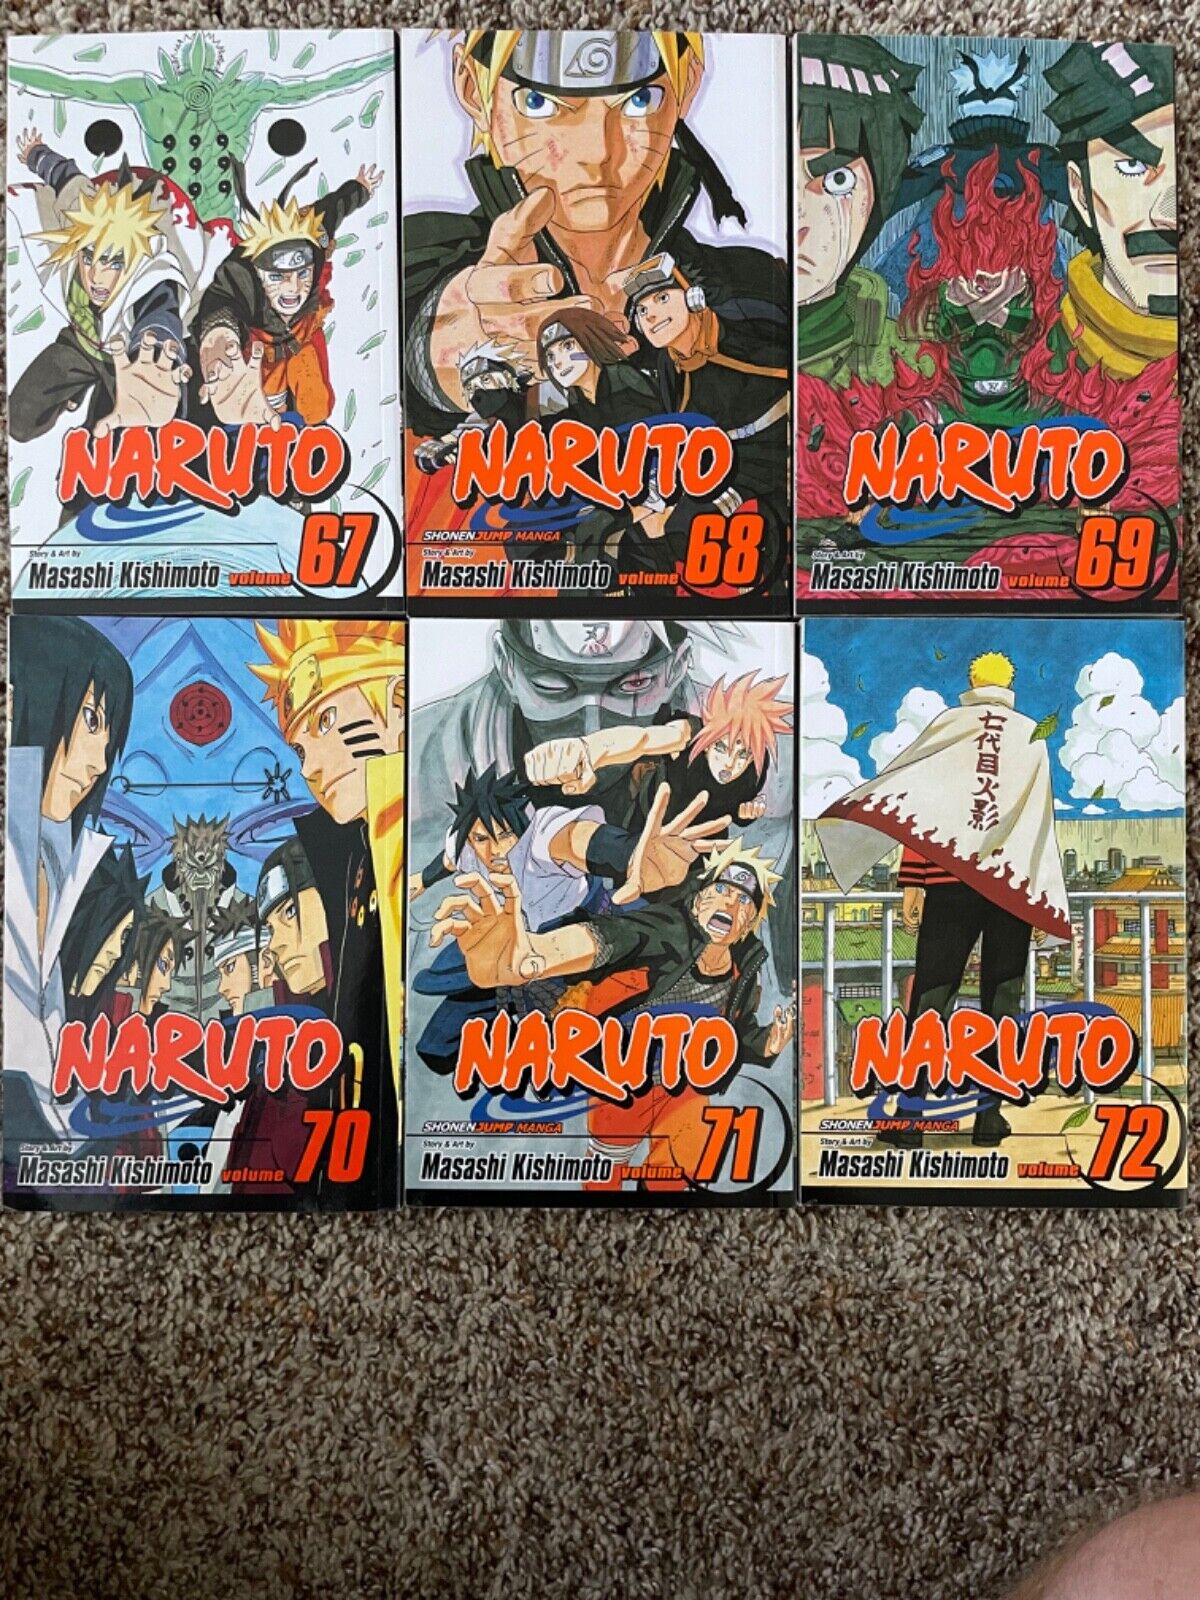 Naruto Shippuden Manga Volumes 67, 68, 69, 70, 71, 72 BRAND NEW 